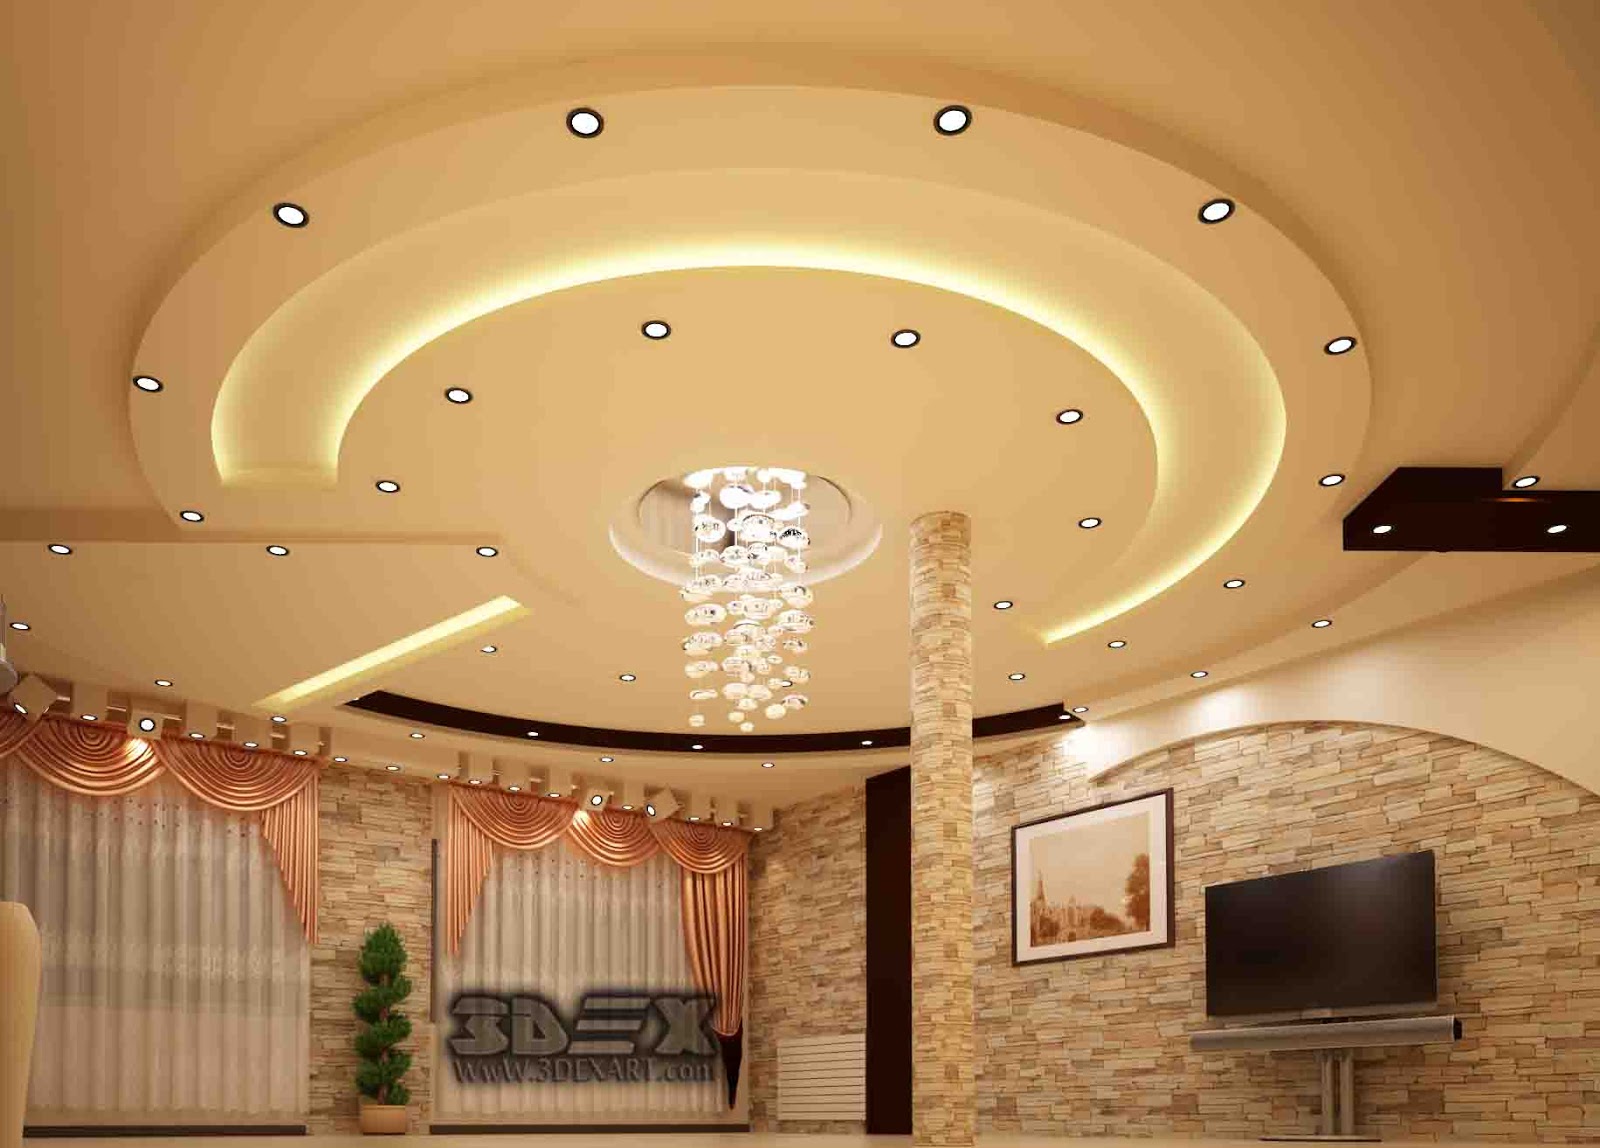 870 Ejaz ideas | ceiling design, false ceiling design, false ...